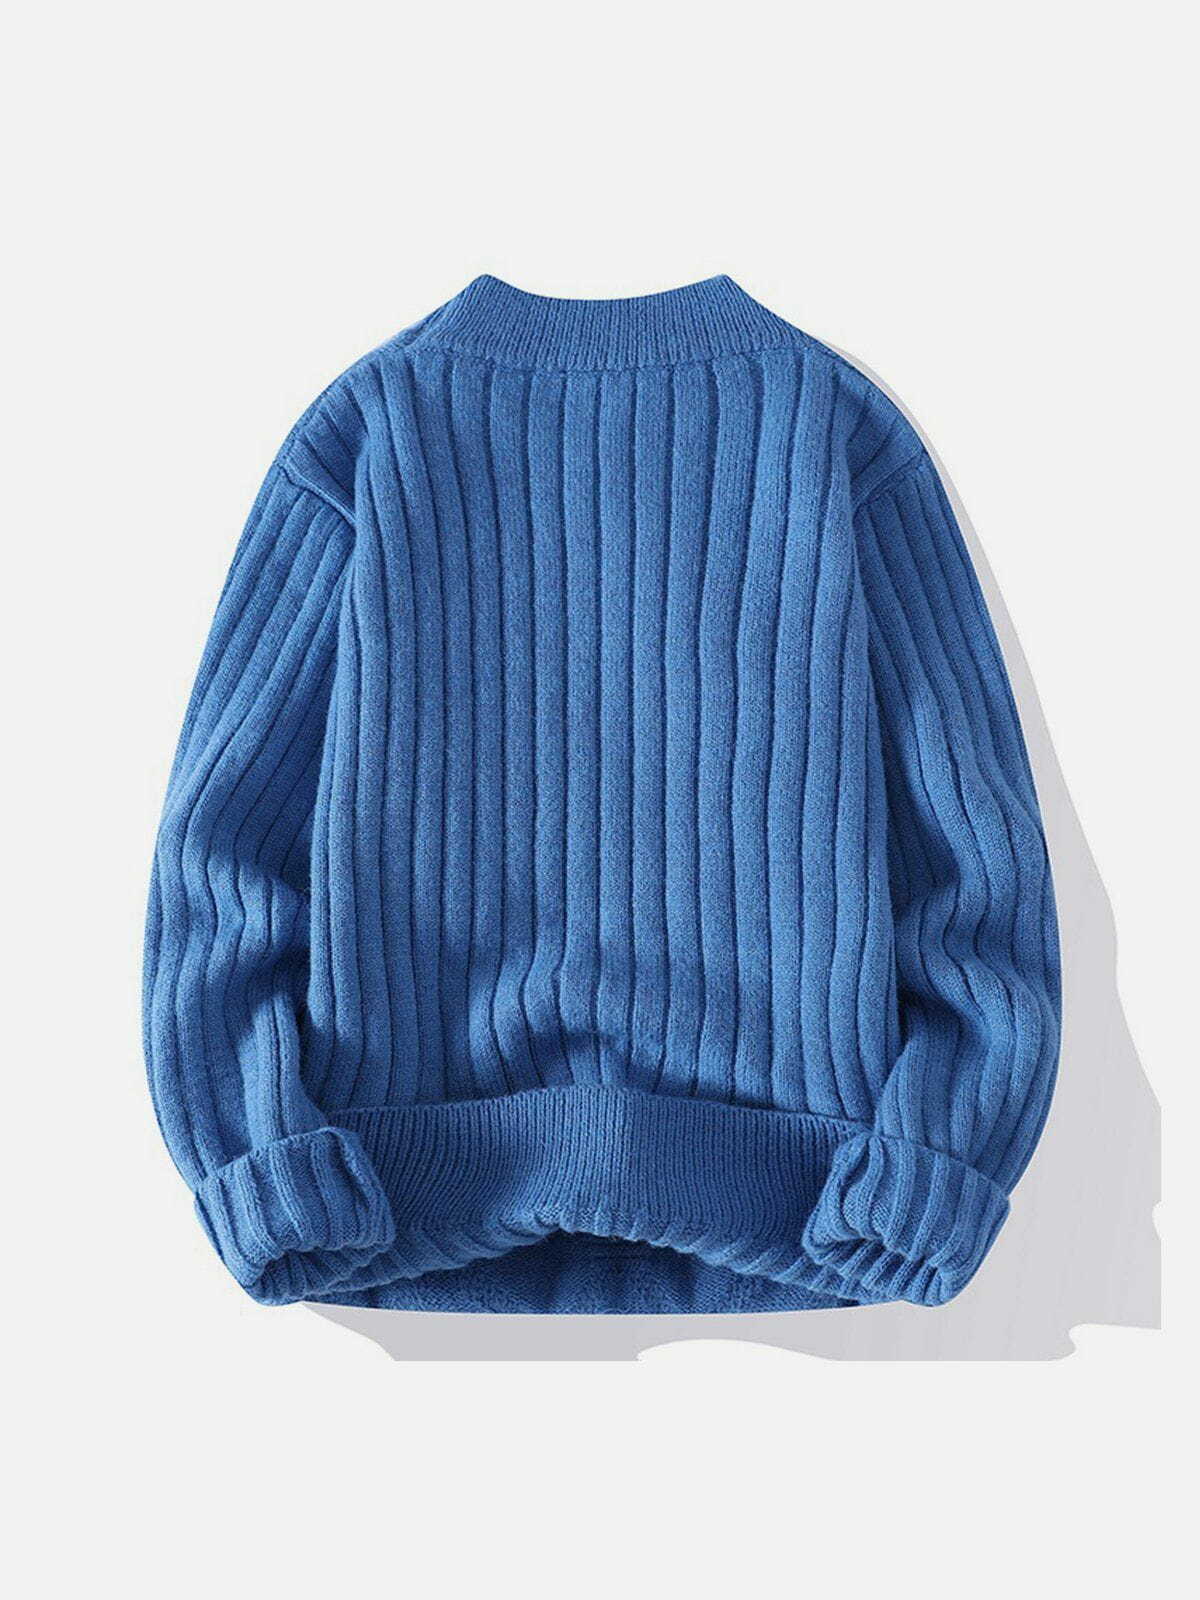 net jacquard sweater sleek & edgy streetwear 7592